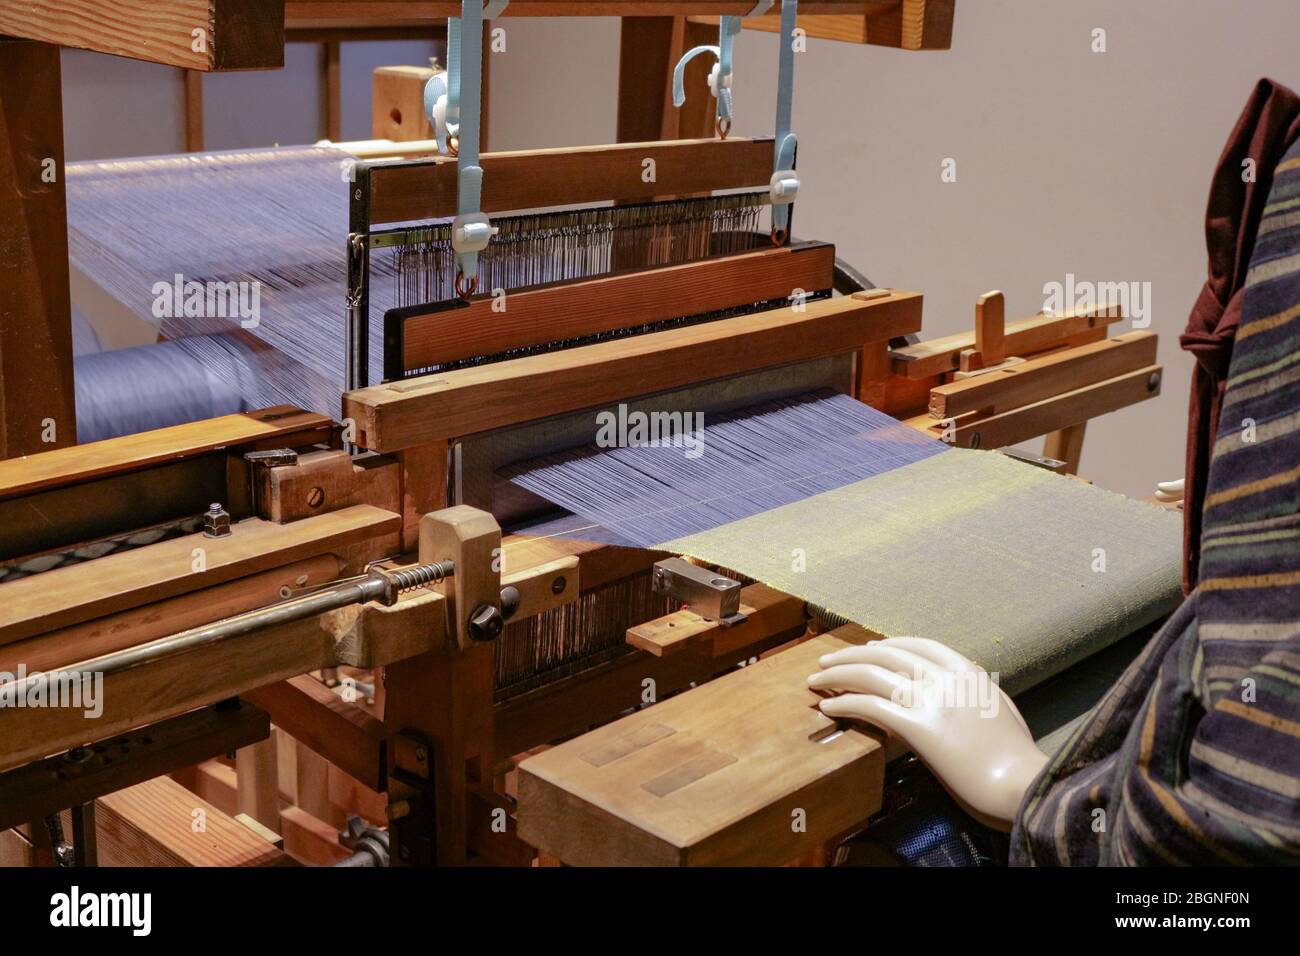 Dies ist eine Webmaschine alte Schule, die Baumwollfaden webt, um ein nahtloses Kleidungsstück wie Teppiche Hemden etc. Zu machen Stockfoto